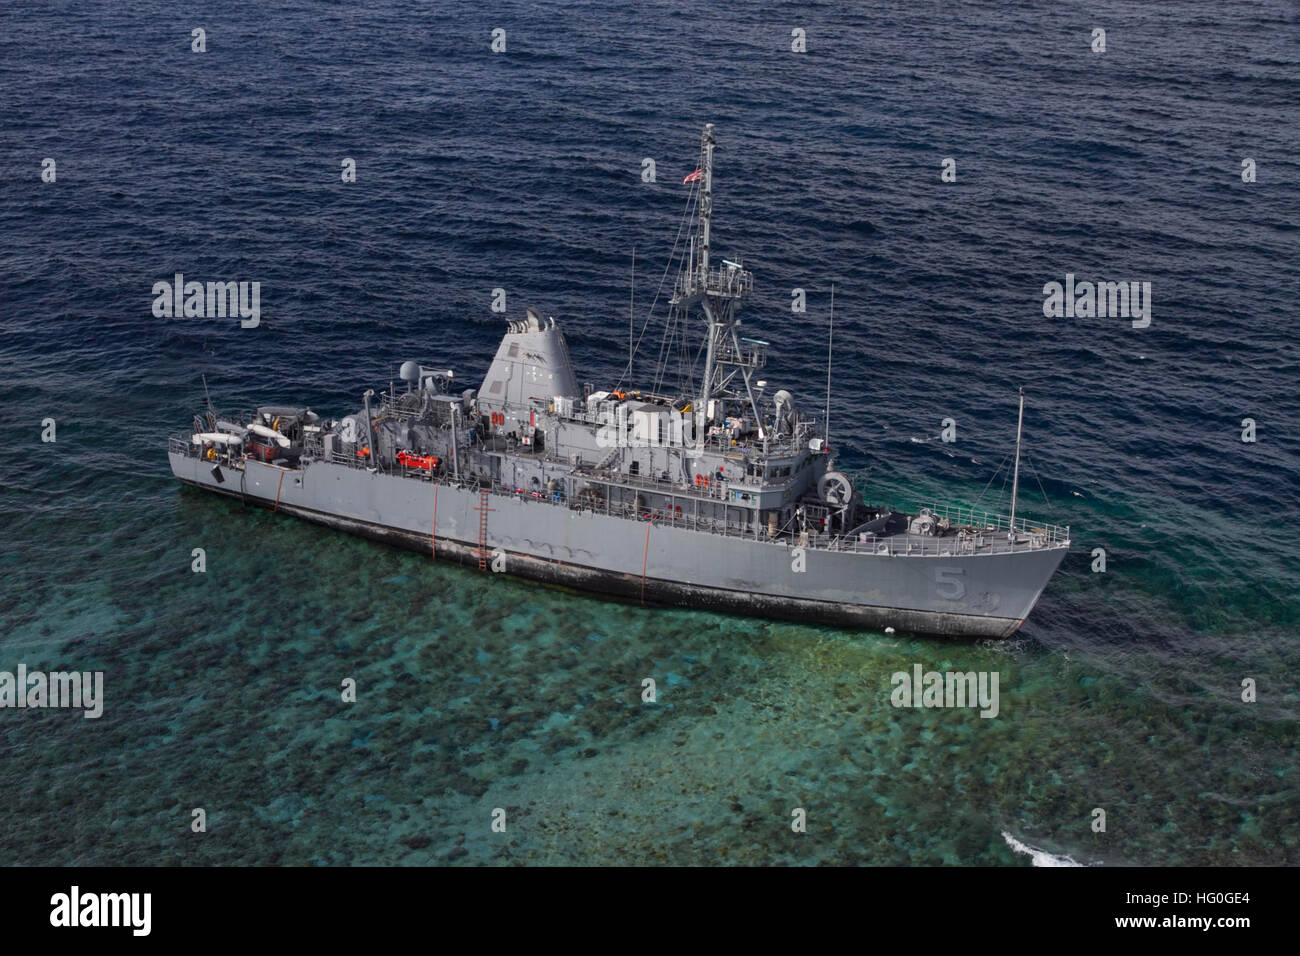 130122-N-ZZ999-061 SULUSEE, Philippinen (22. Januar 2013) USS Guardian (MCM 5) sitzt auf Grund am Tubbataha Reef.  Operationen, das Schiff sicher zu erholen, bei gleichzeitiger Minimierung der Auswirkungen auf die Umwelt werden in enger Zusammenarbeit mit Alliierten Philippinen Küstenwache und Marine durchgeführt.  (Foto: U.S. Navy Aircrewman taktische Hubschrauber 3. Klasse Geoffrey TrudellReleased) USS Guardian im Januar 2013 Stockfoto